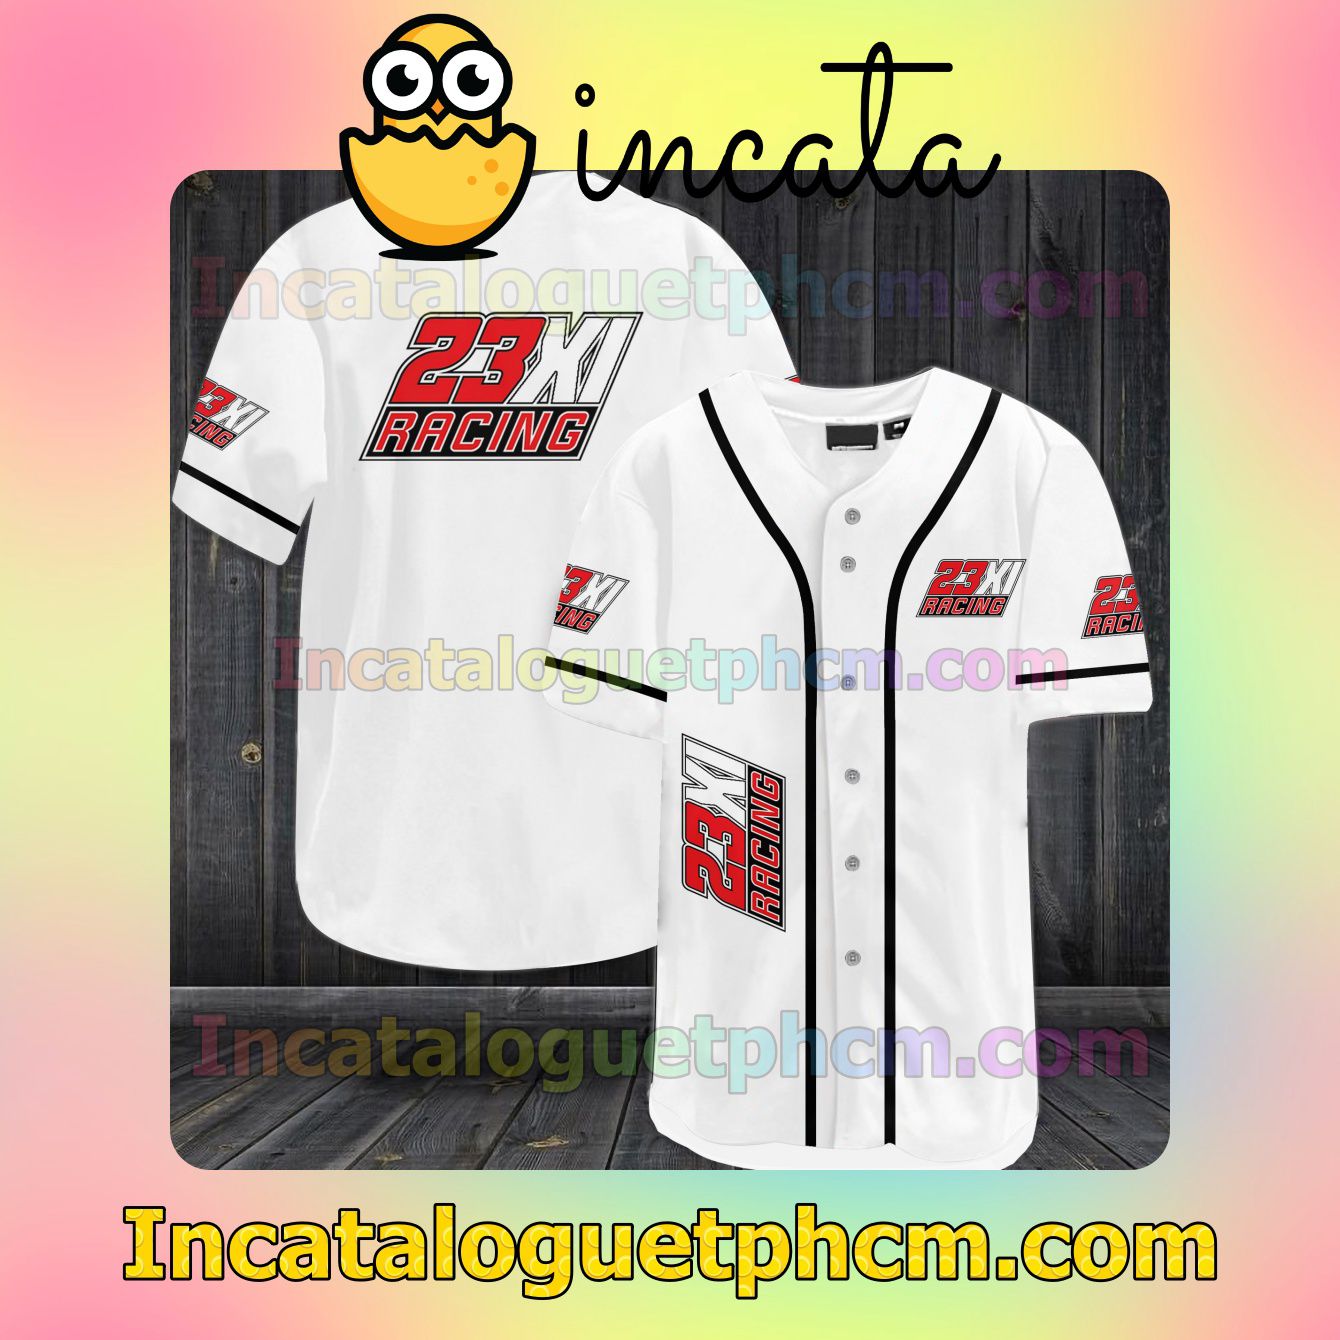 23XI Racing Car Team Baseball Jersey Shirt